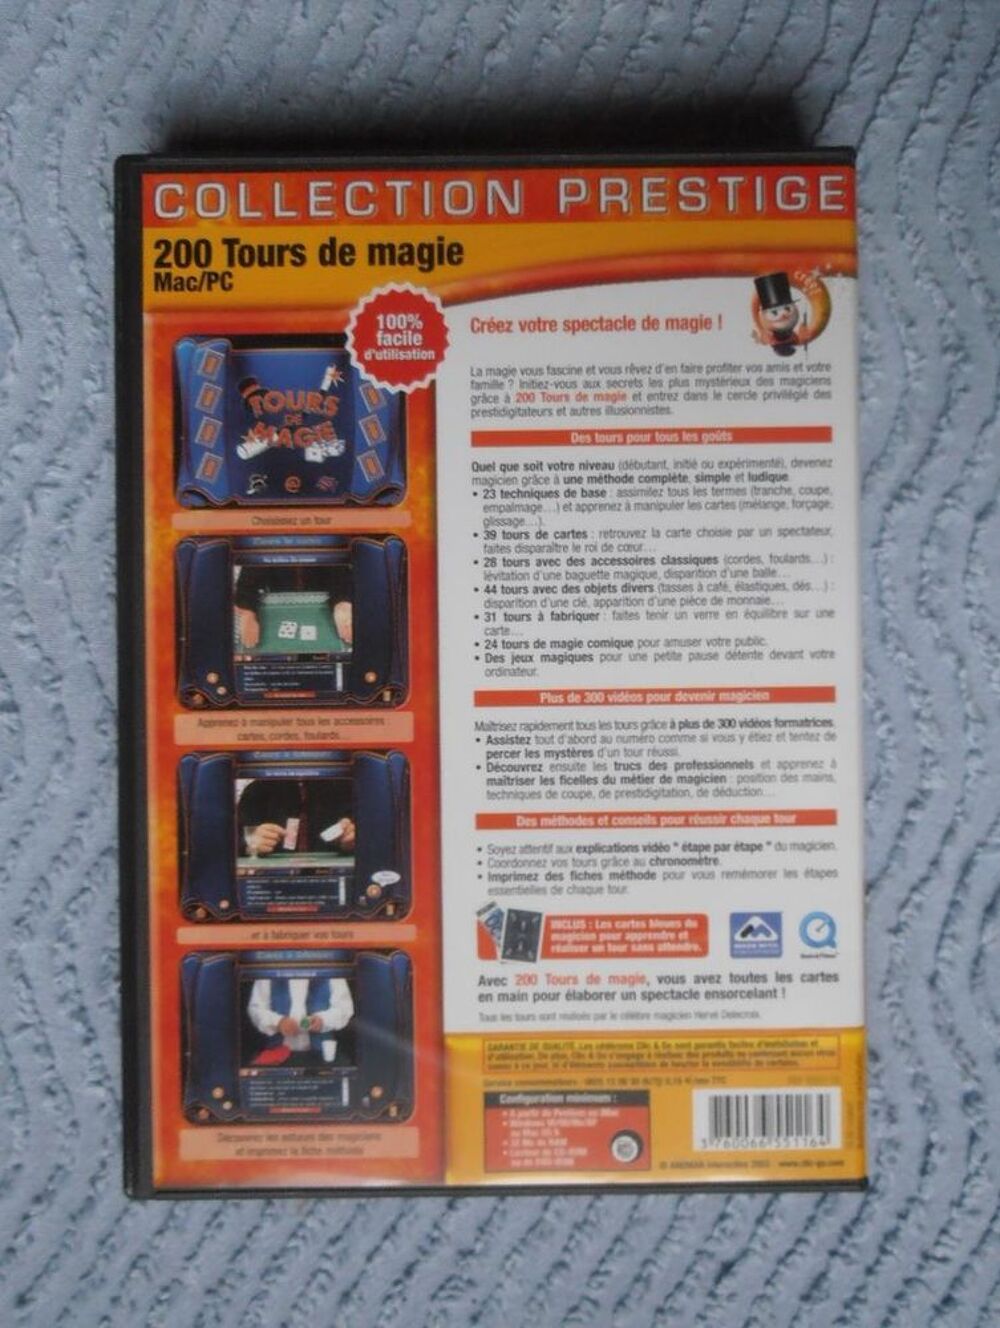 CD jeu Mac/PC 200 tours de magie NEUF
Consoles et jeux vidos